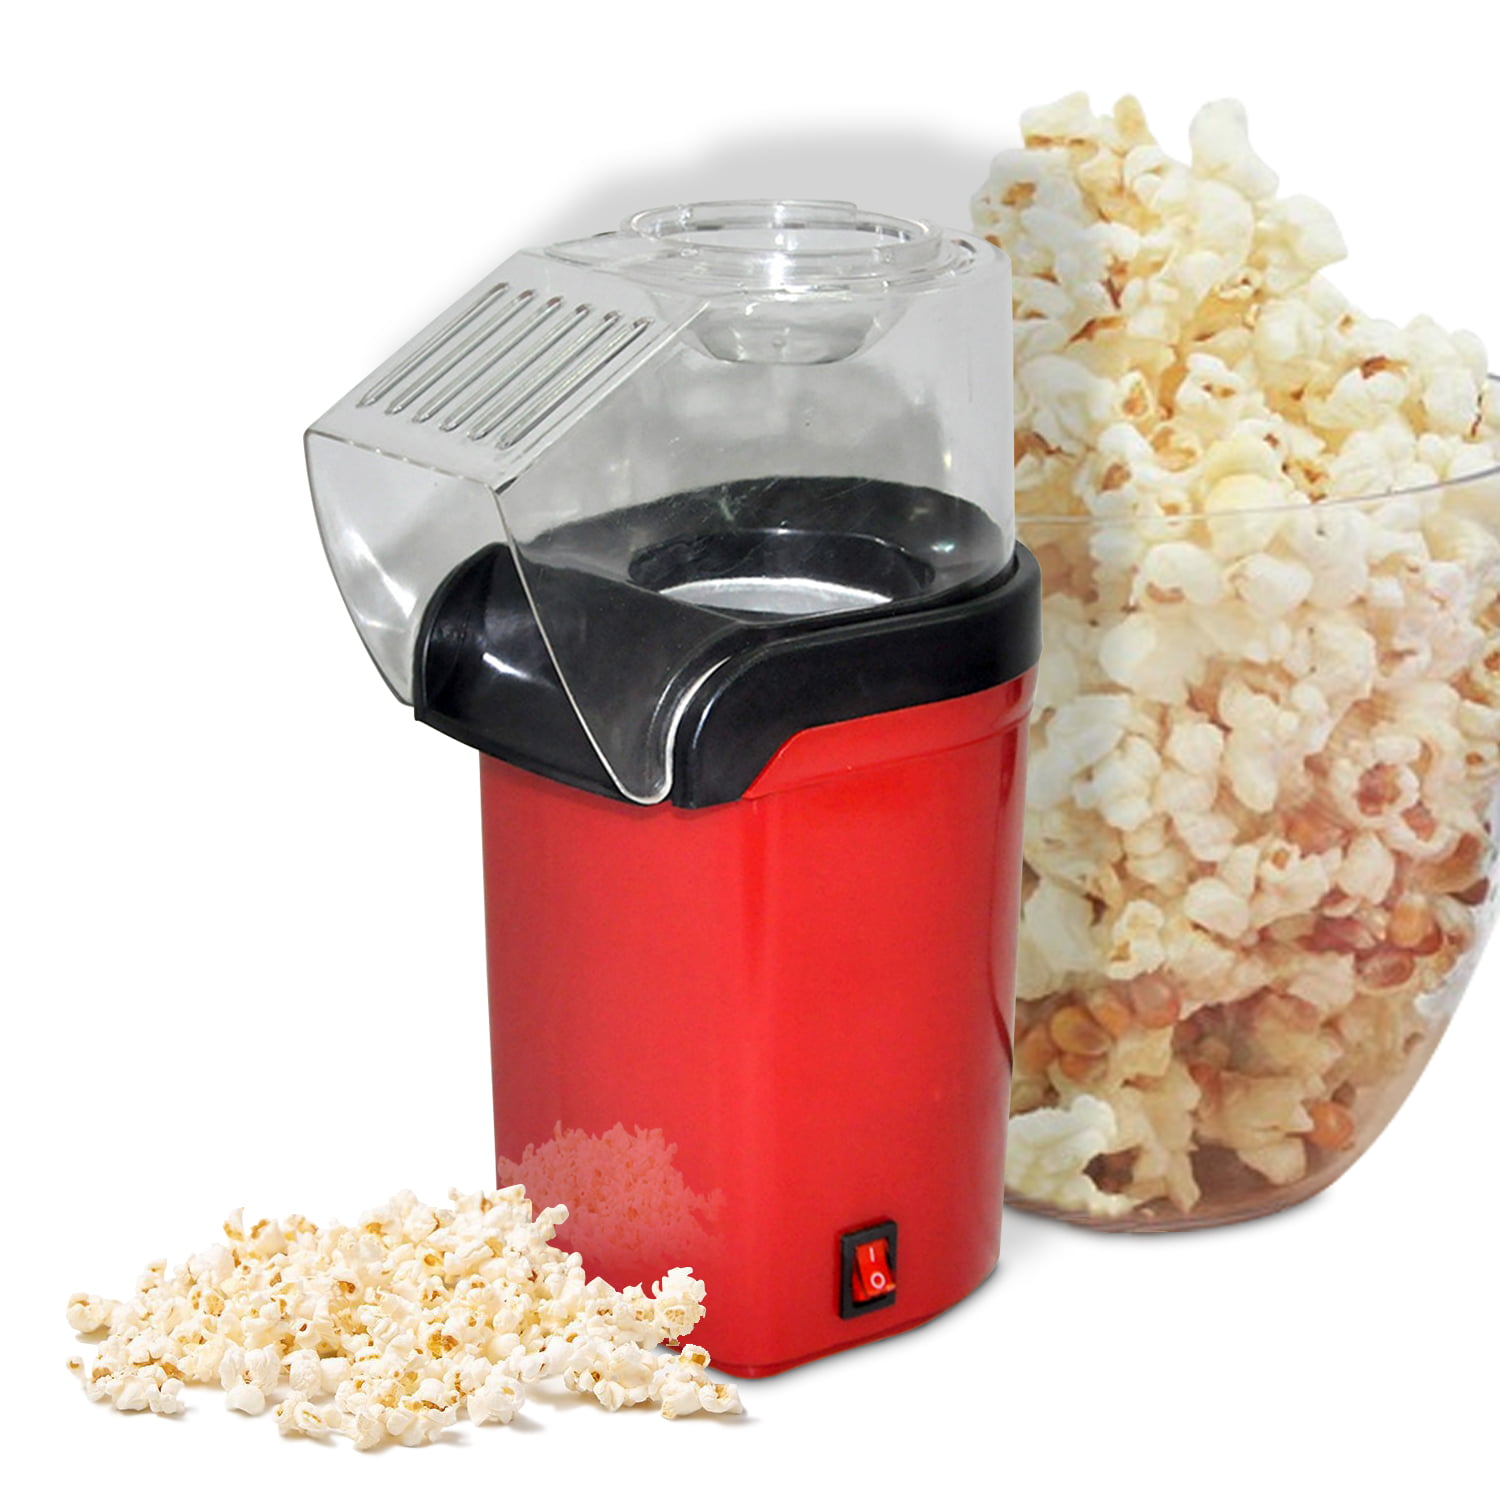 Sans Huile SIMBR Machine /à Popcorn Electrique 1200W,Appareils /à Popcorn Electrique Portable,Popcorn en 3 Minutes,Popcorn Popper Antiadh/ésif avec Tasse /à Mesurer,Air Chaud Cuisson Saine,Rouge